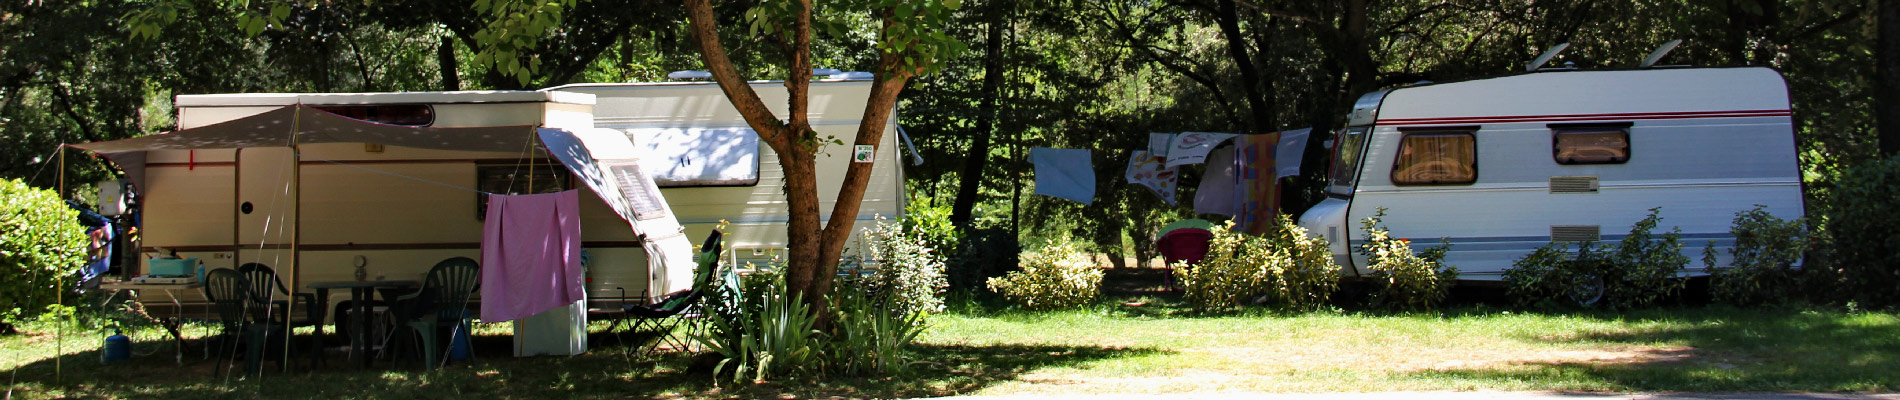 camping gard emplacement camping car